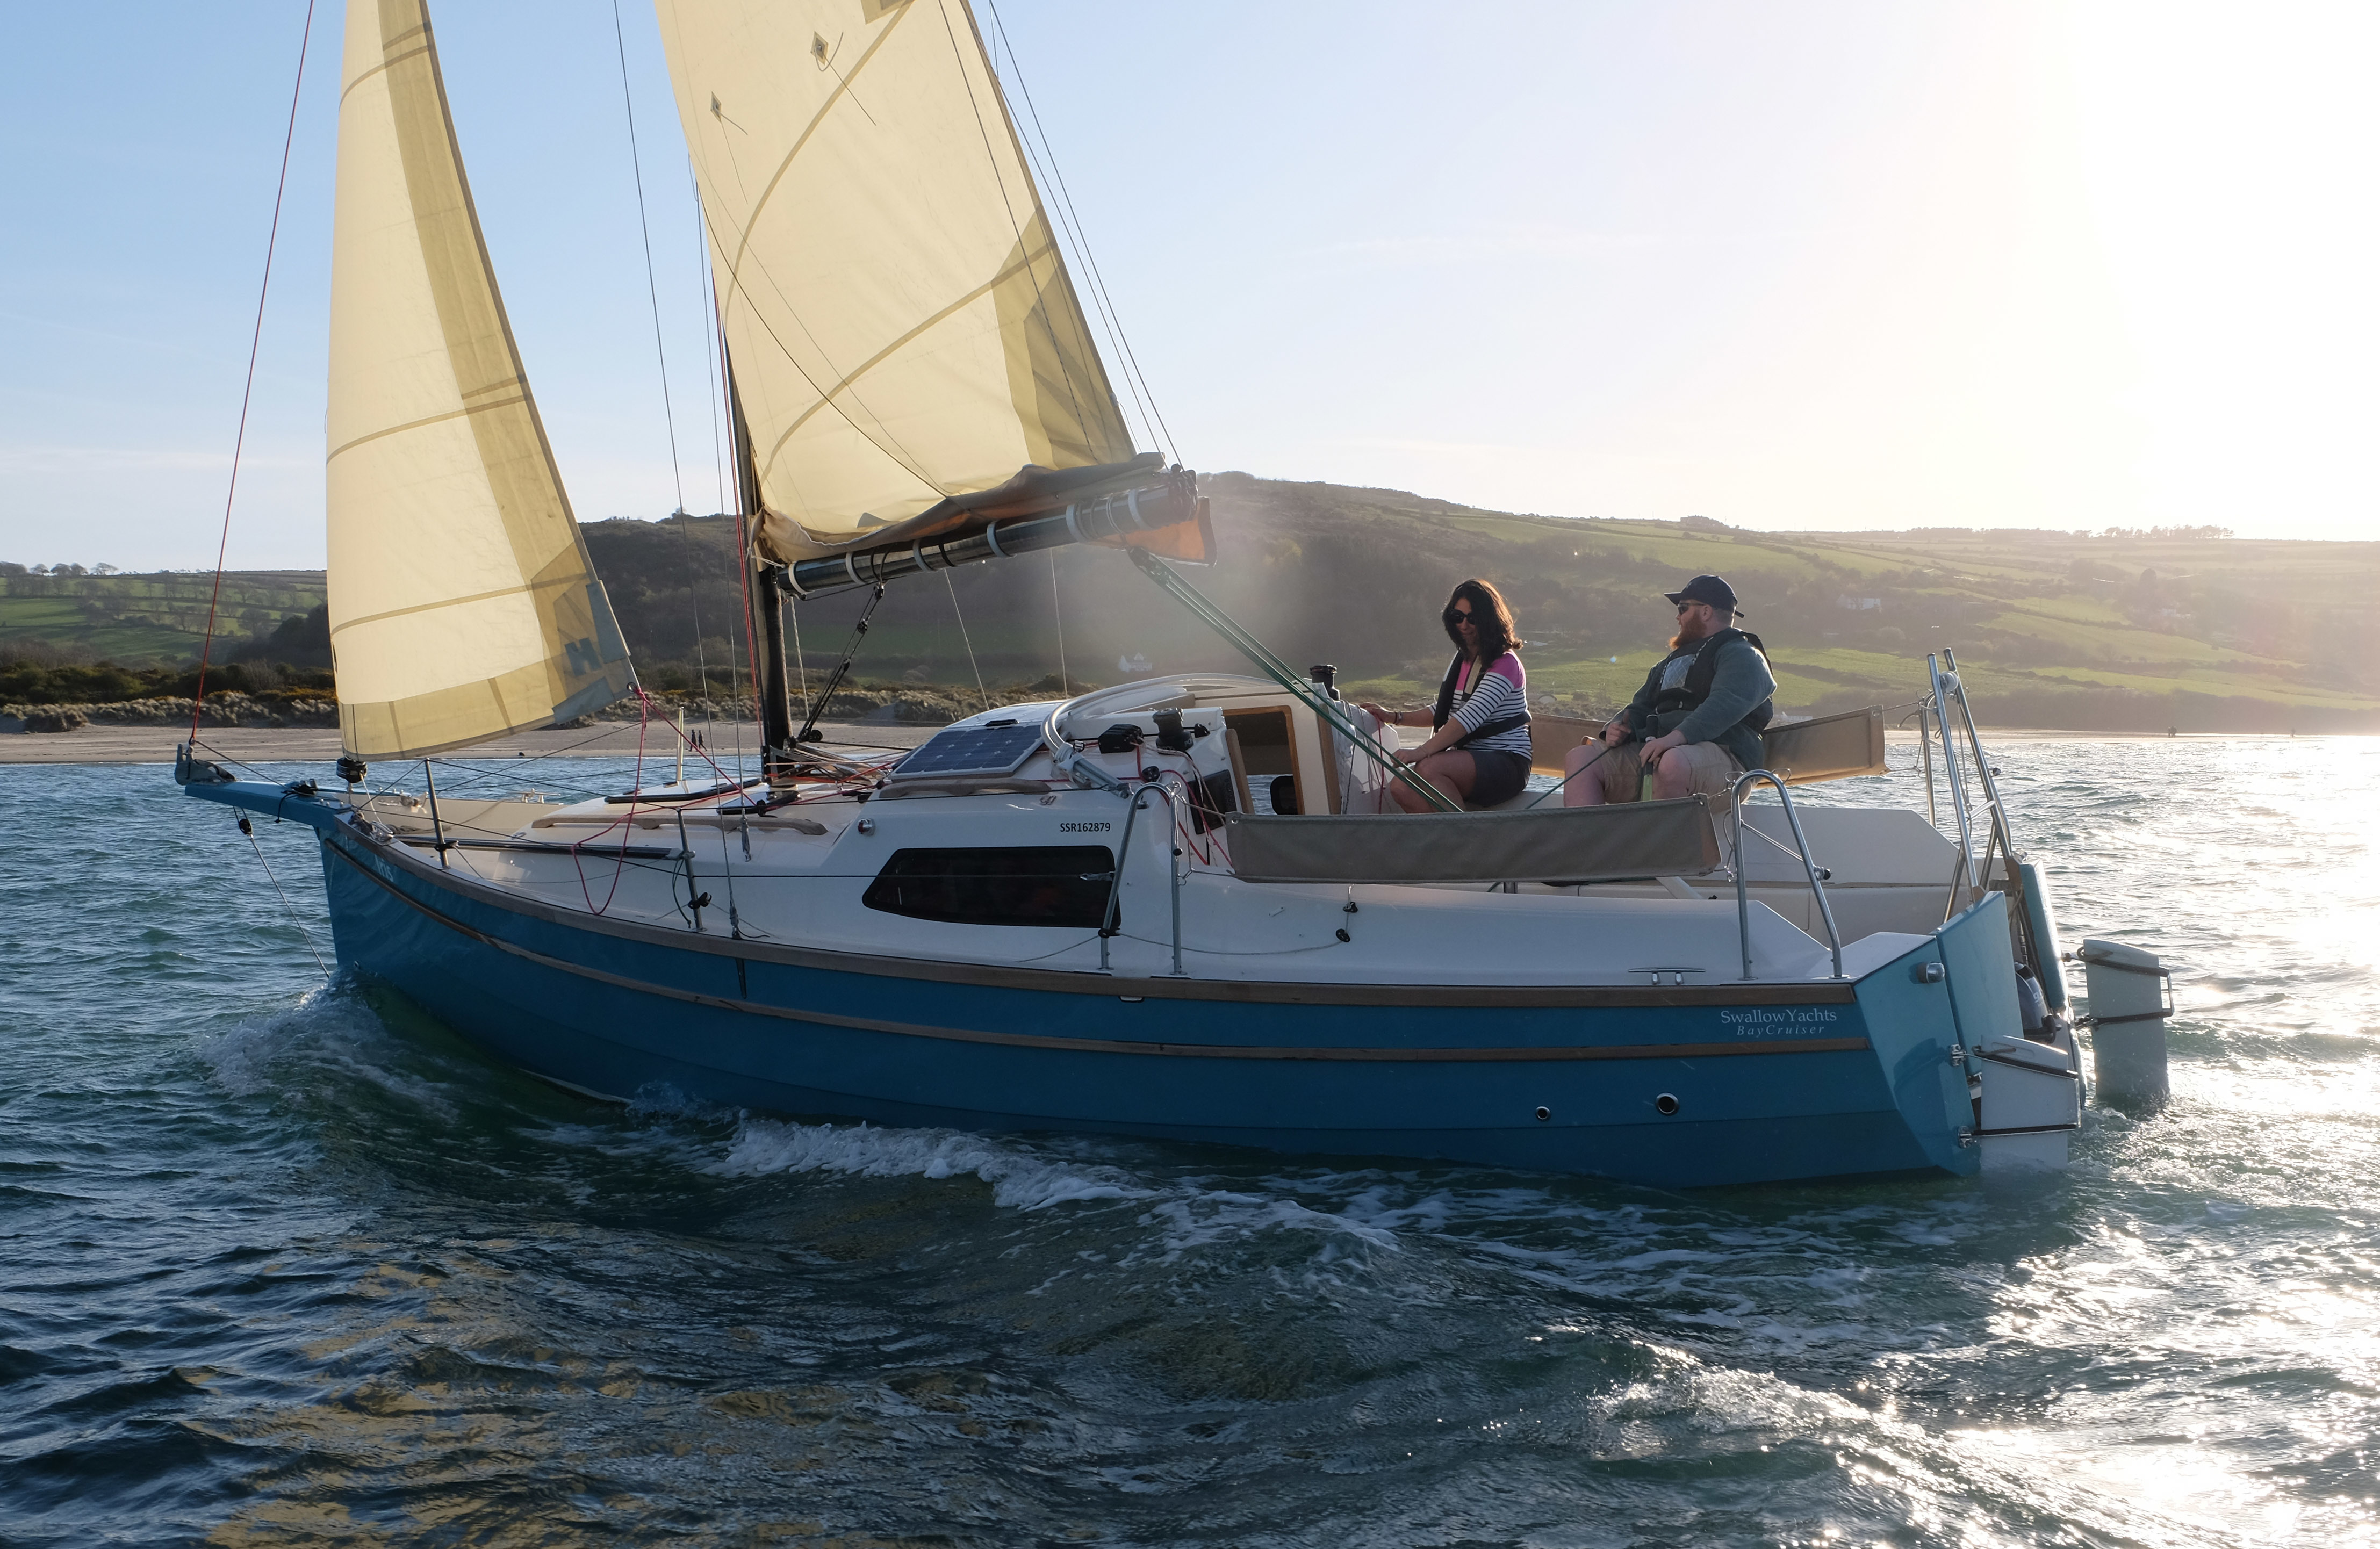 baycruiser 26 sailboat for sale